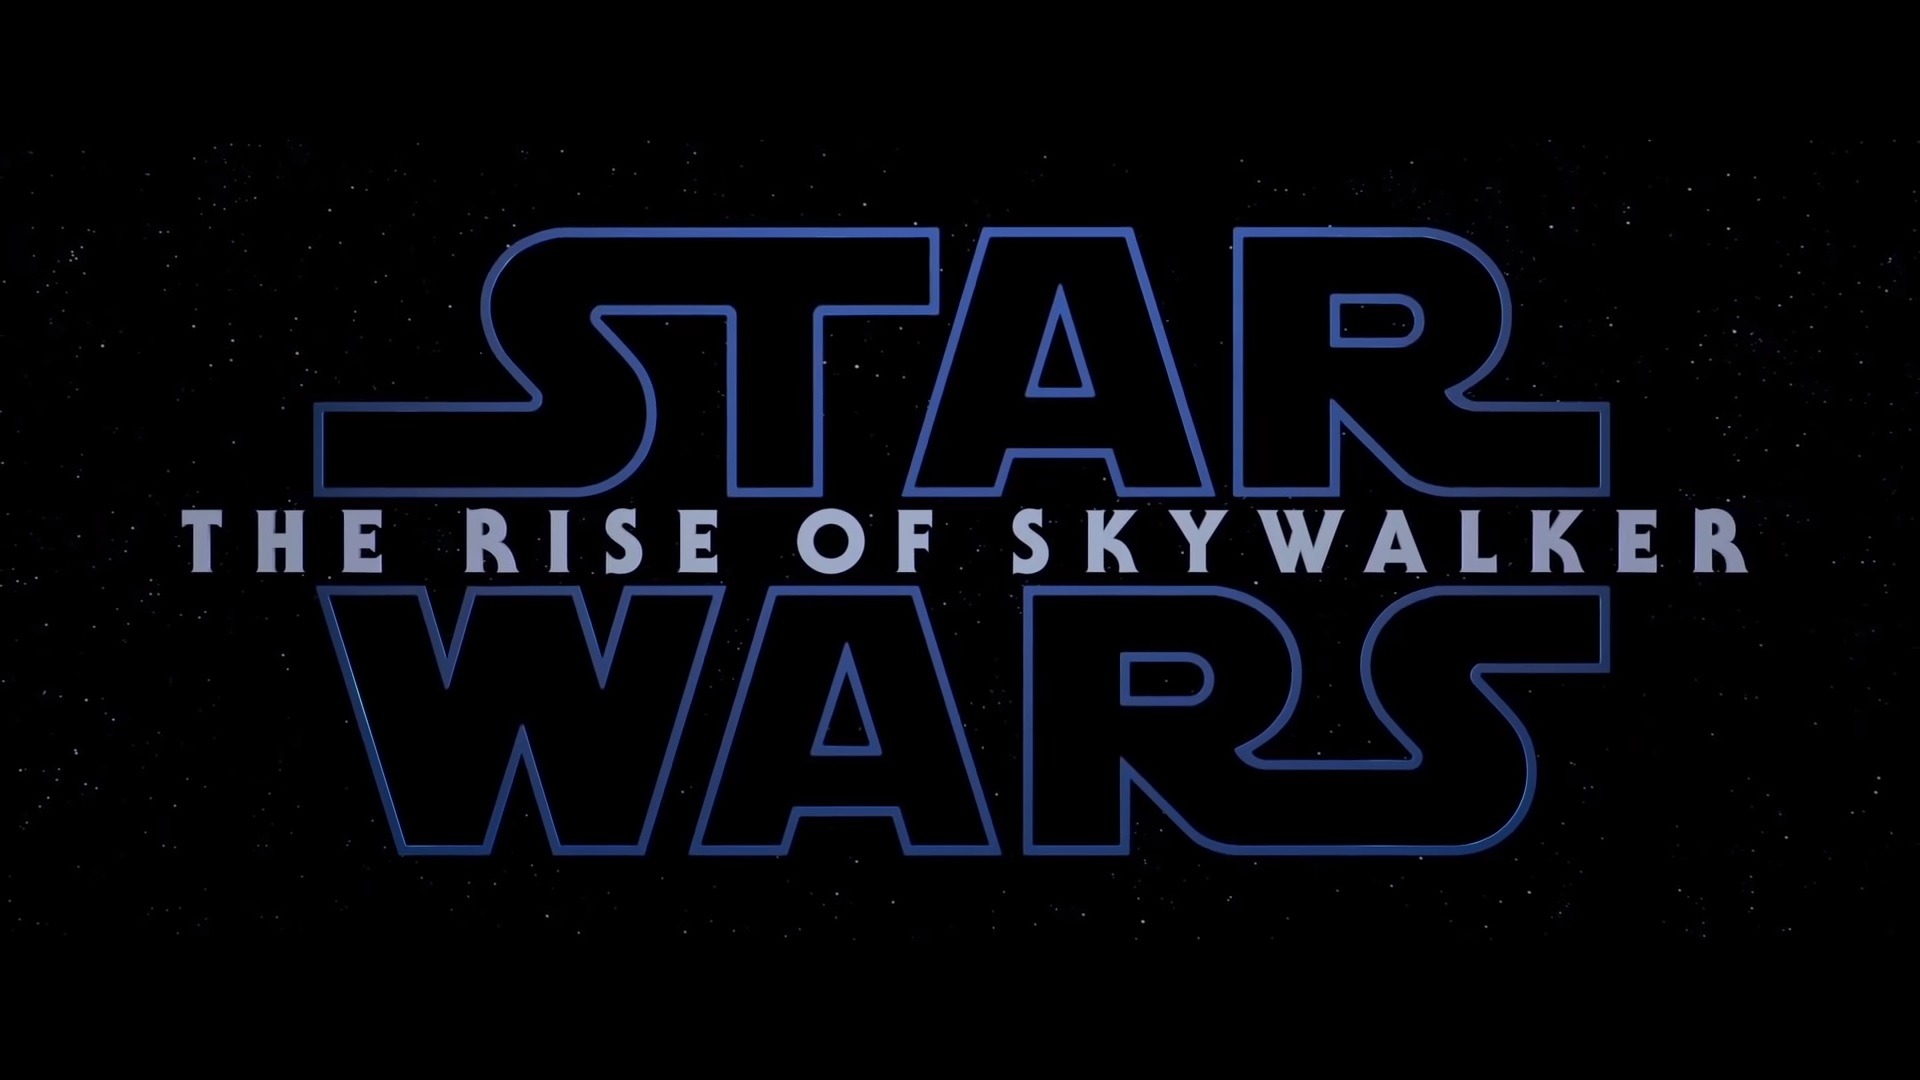 Star Wars: The Rise of Skywalker (2019) - Trailer - MEGANUT